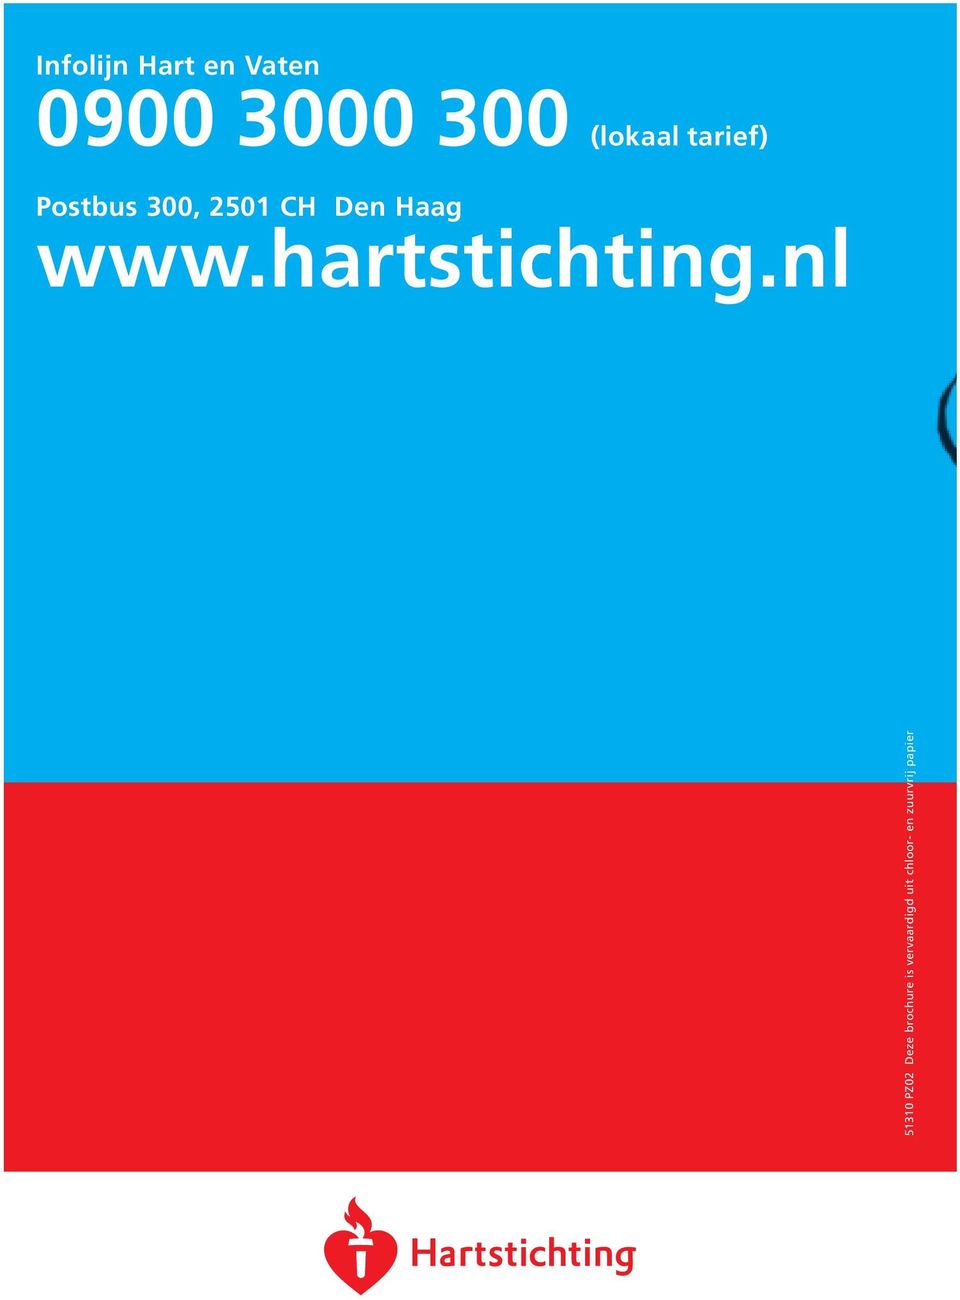 Haag www.hartstichting.